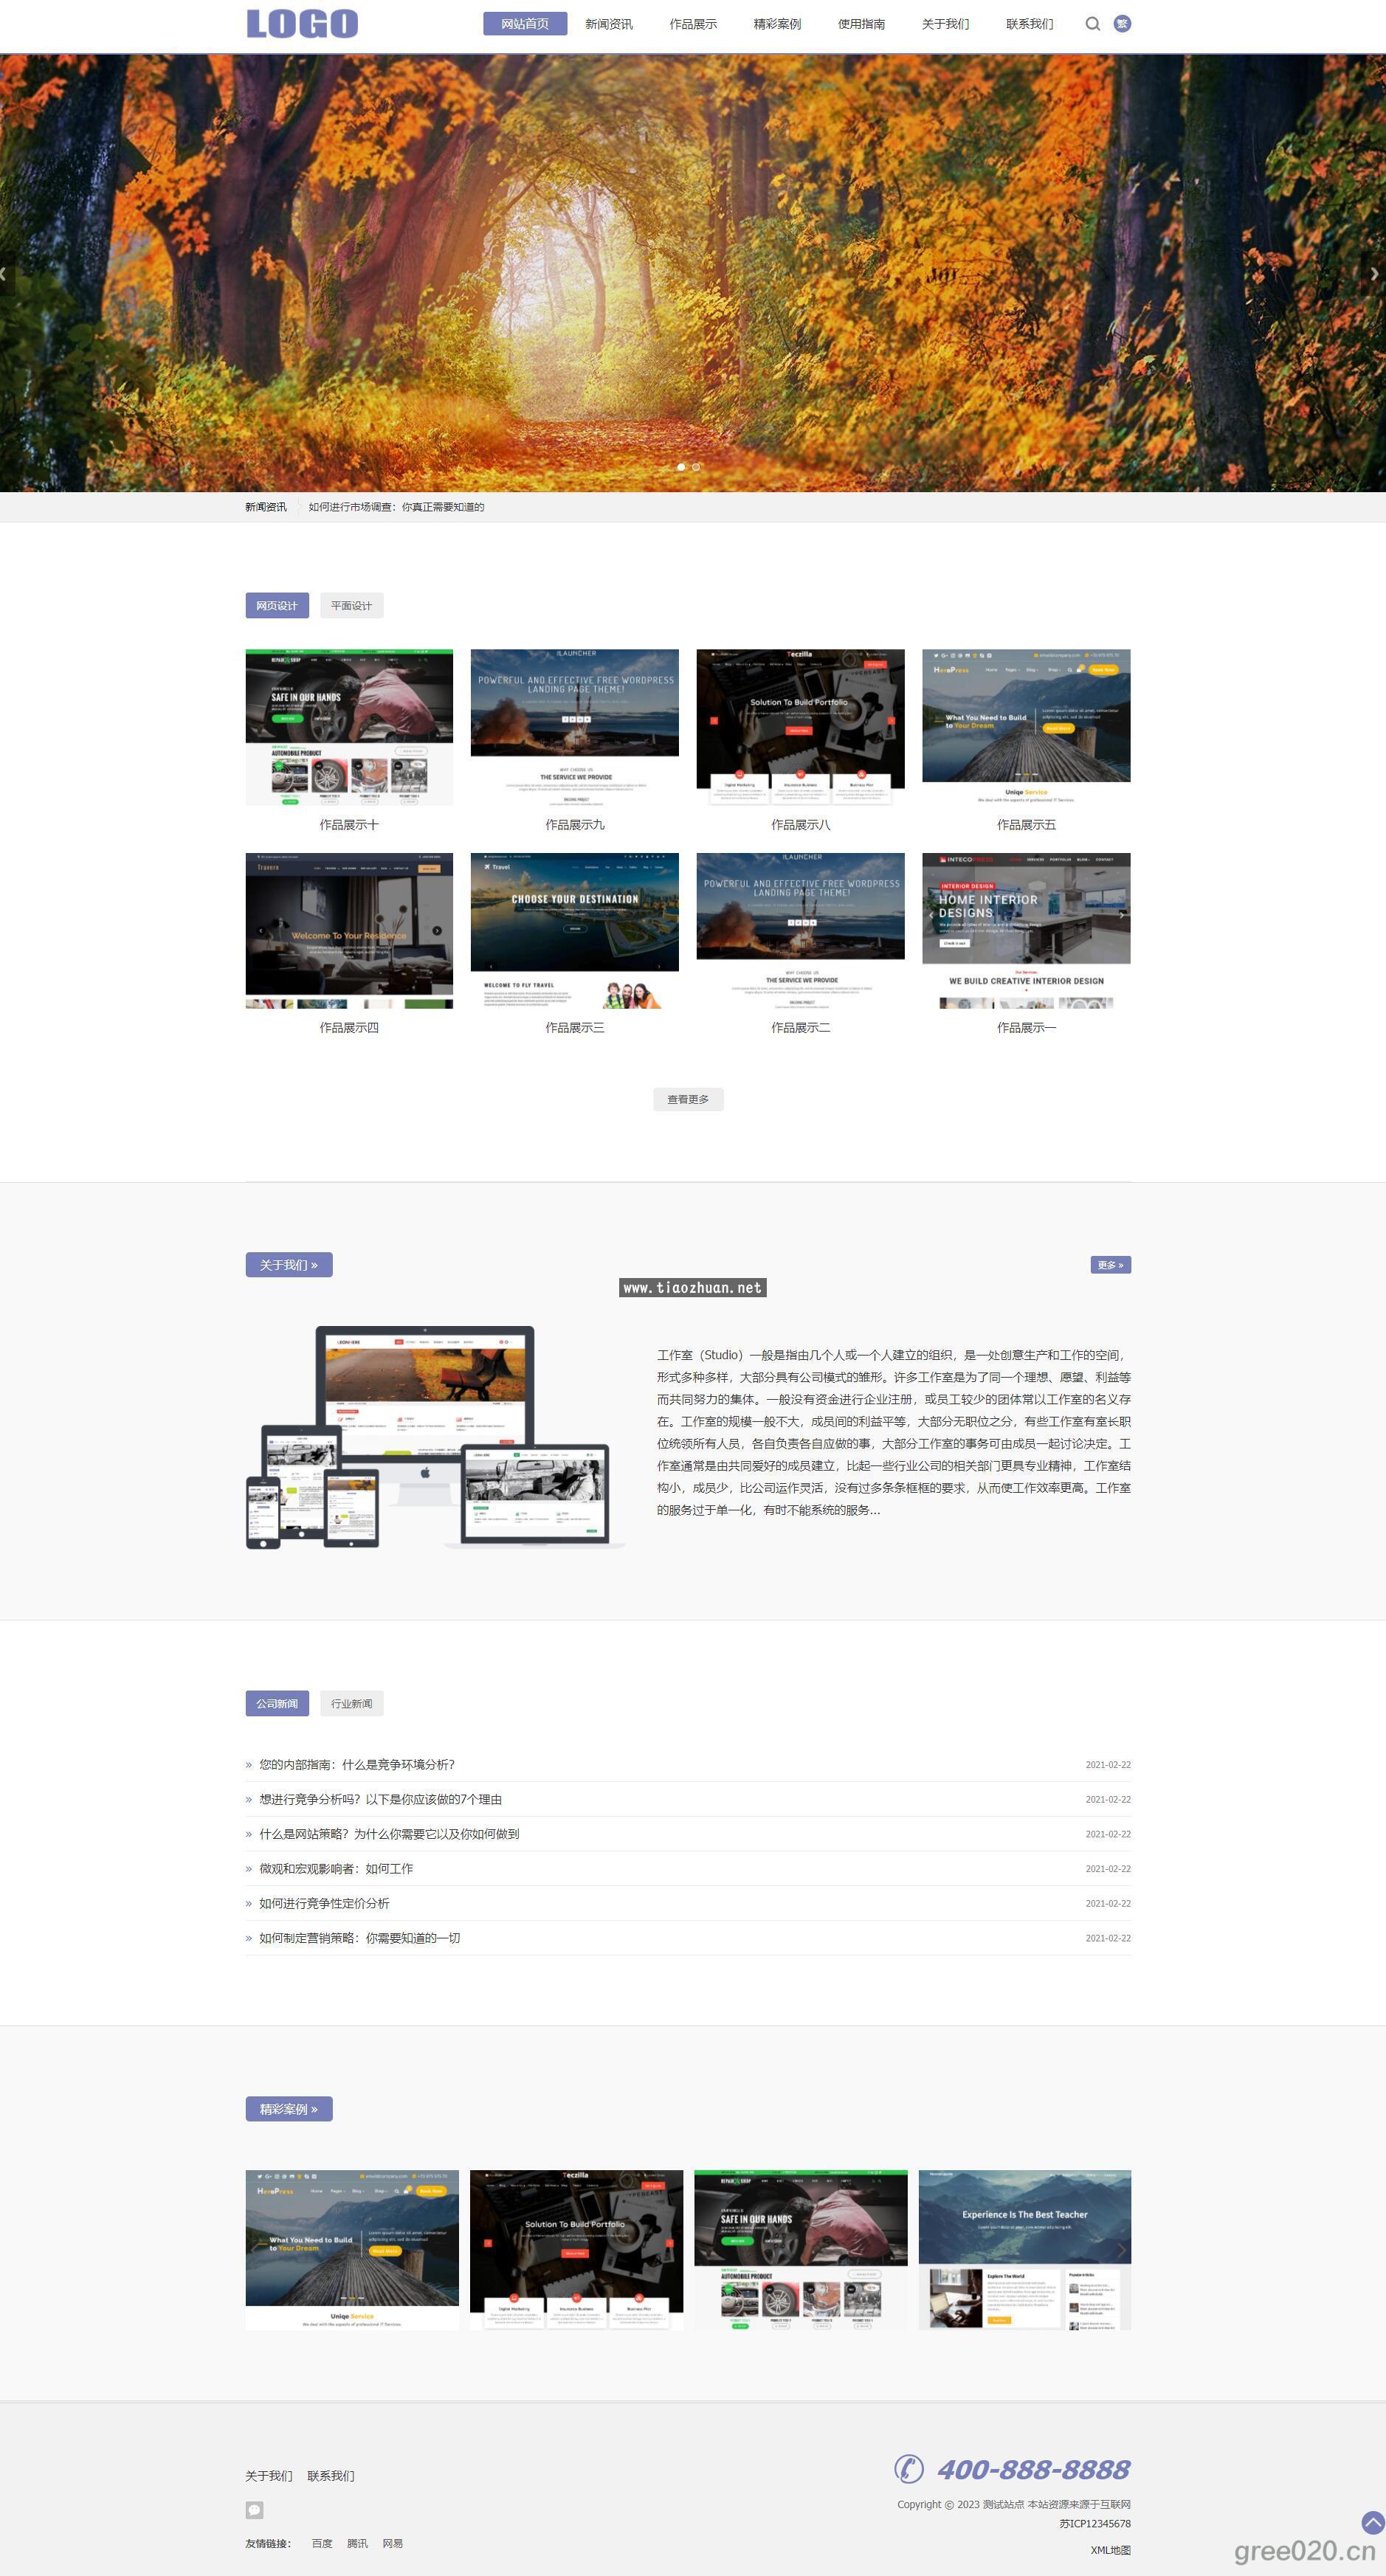 平面设计作品展示网站模板 网络工作室网站源码下载